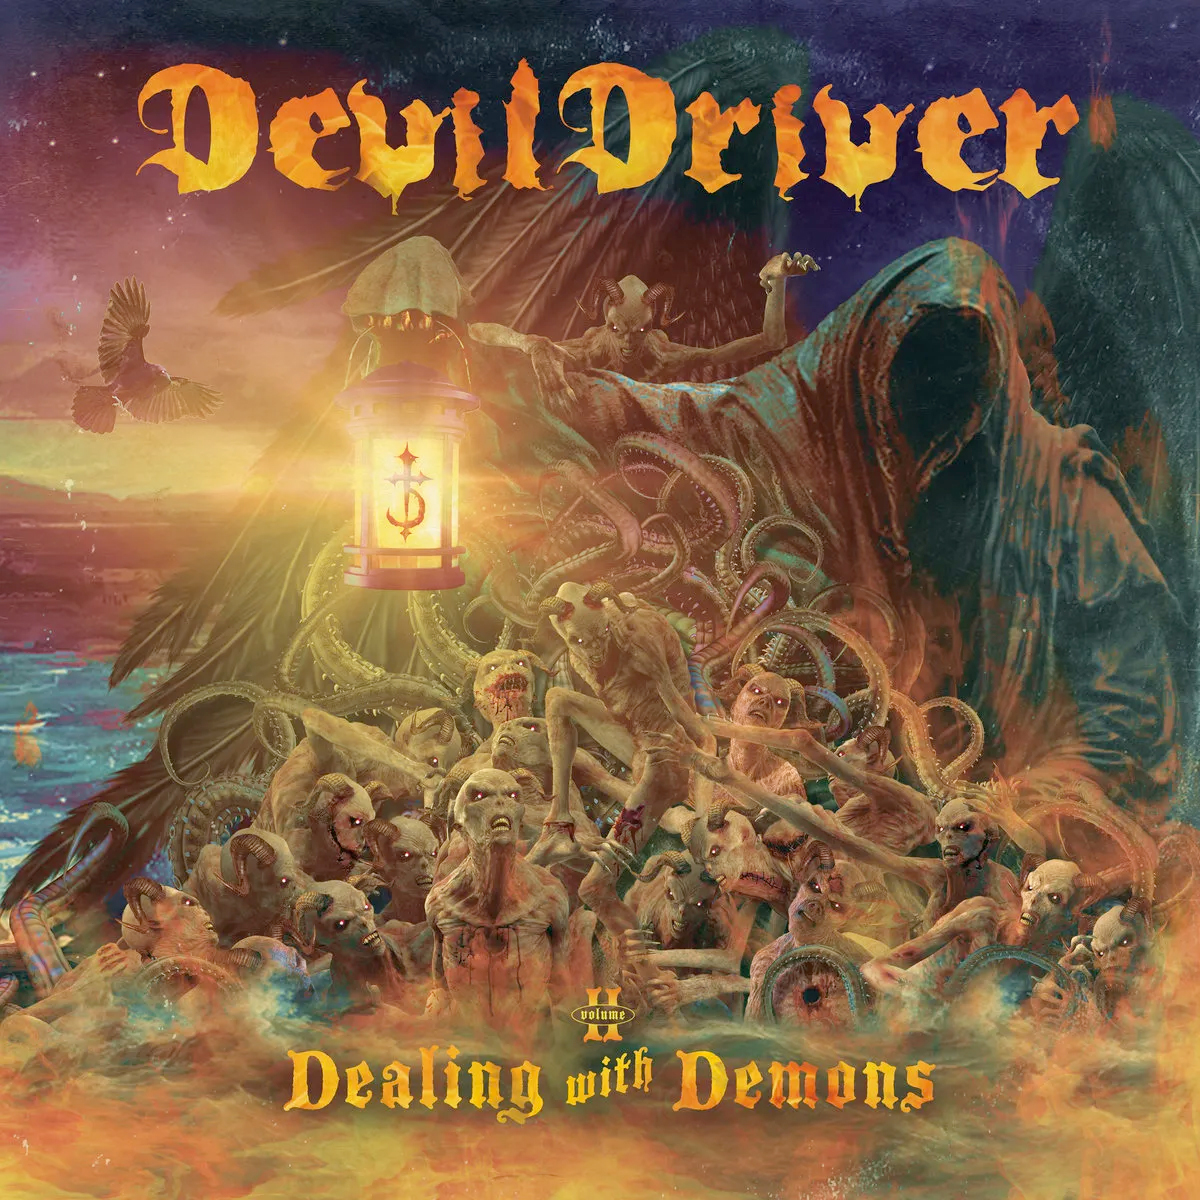 Dealing with Demons II album artwork